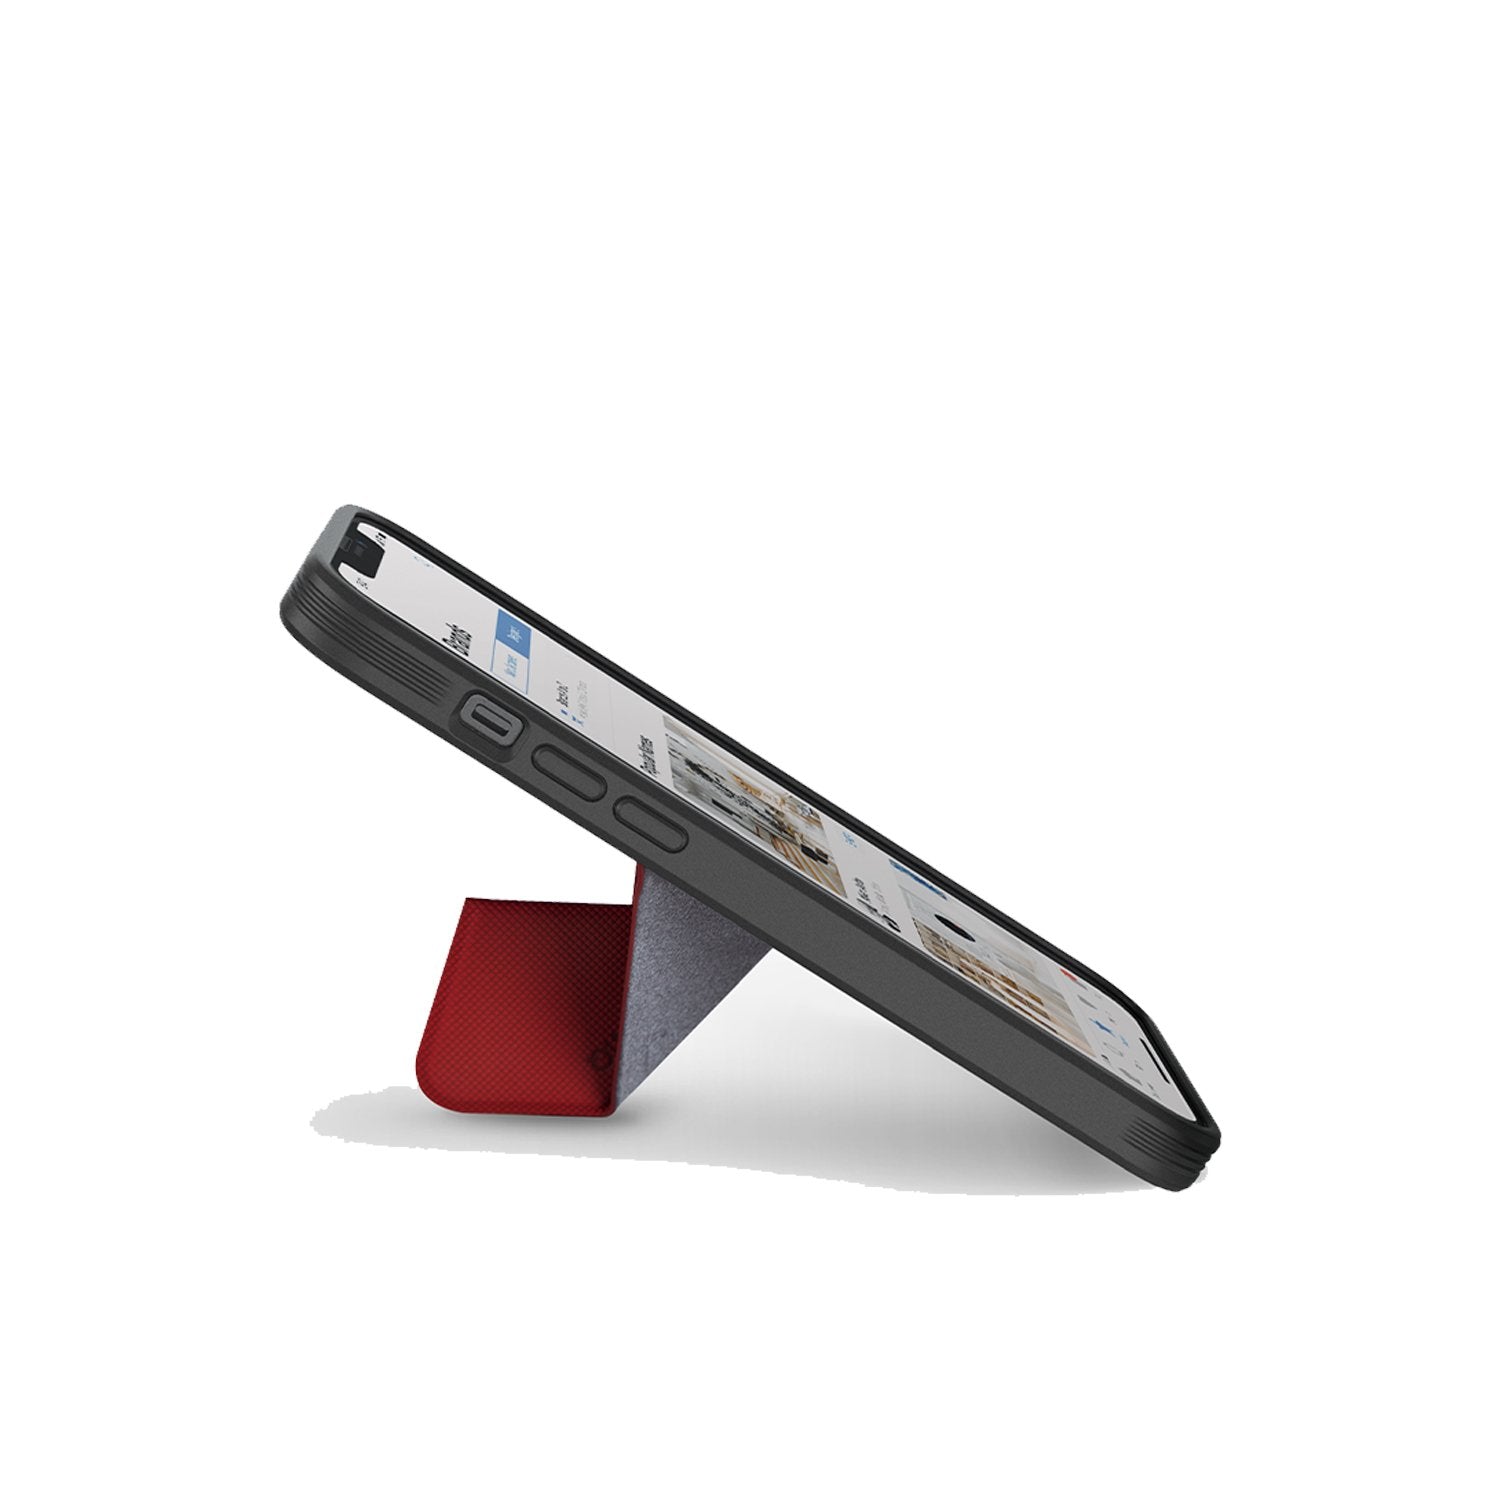 UNIQ TRANSFORMA - Coque de Protection Anti-Choc Rouge corail avec Support Réglable iPhone 13 Pro Max